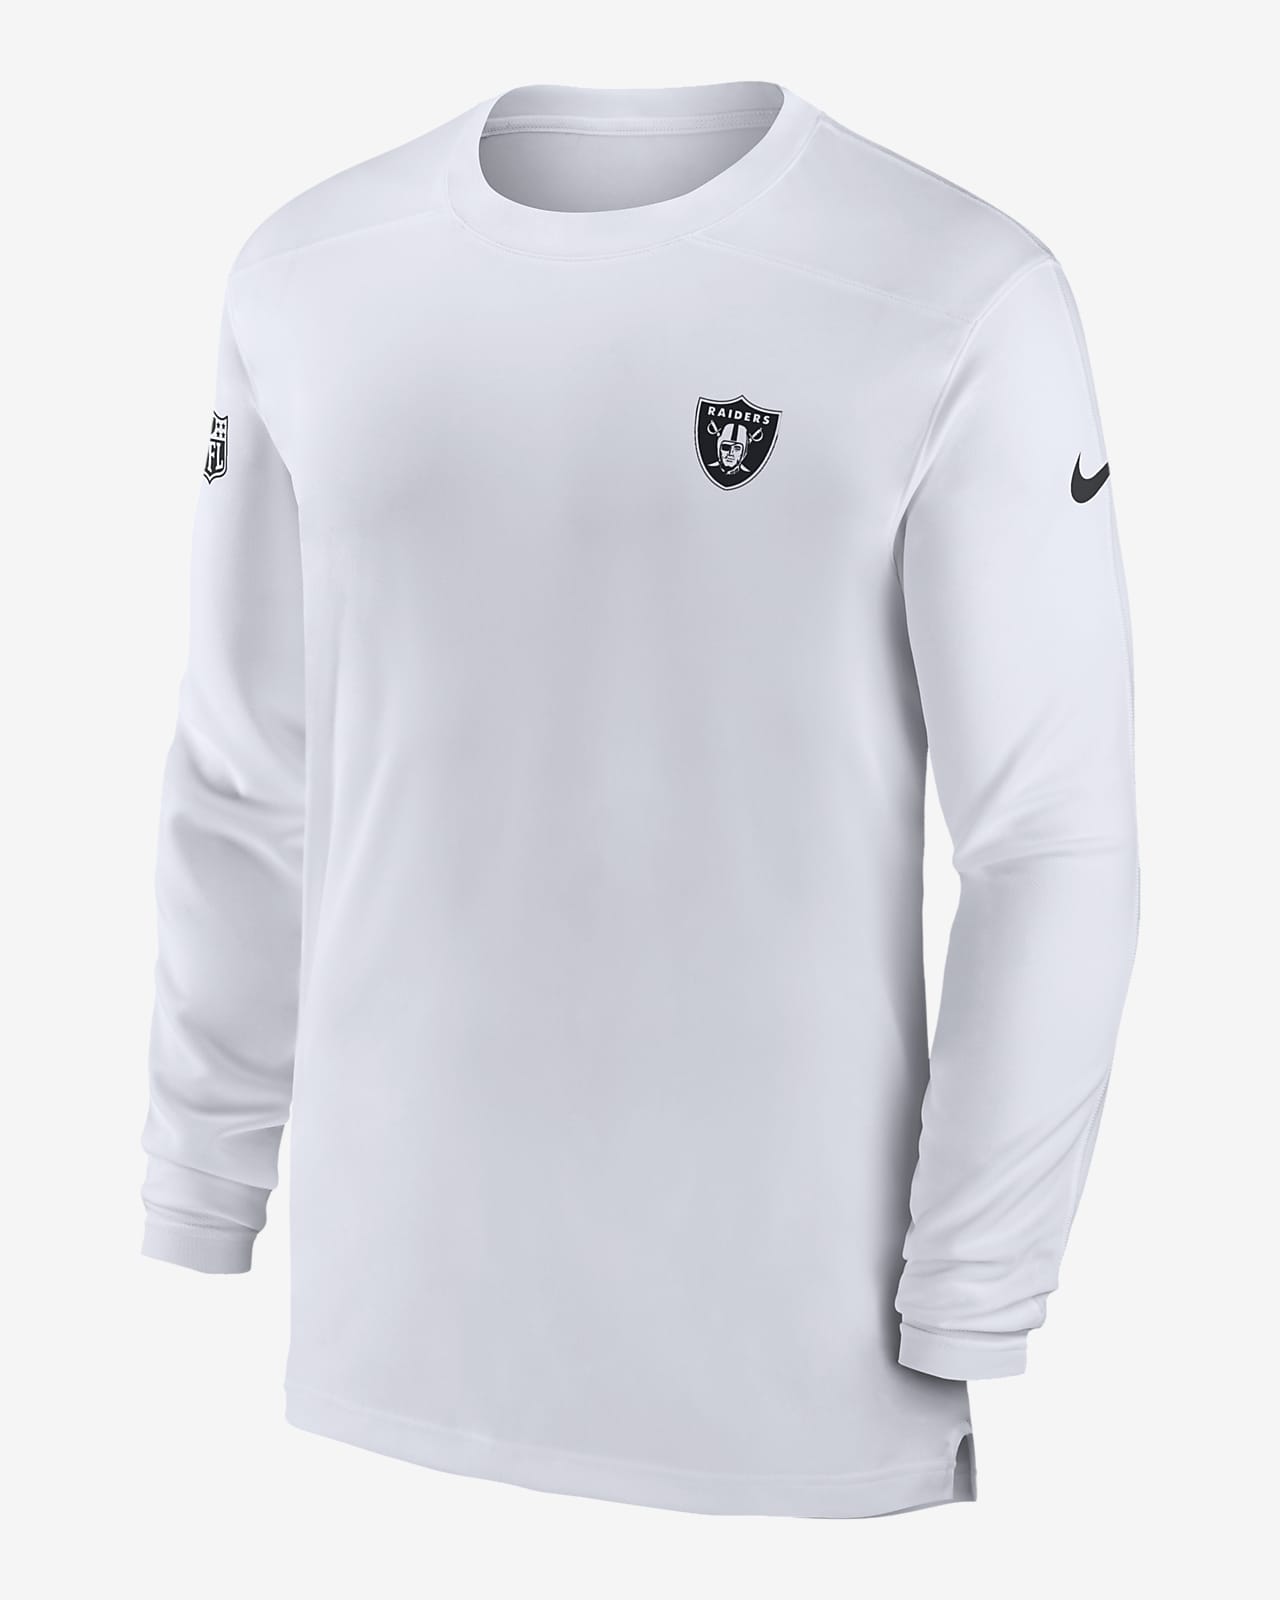 Las Vegas Raiders Sideline Club Men's Nike NFL Pullover Hoodie